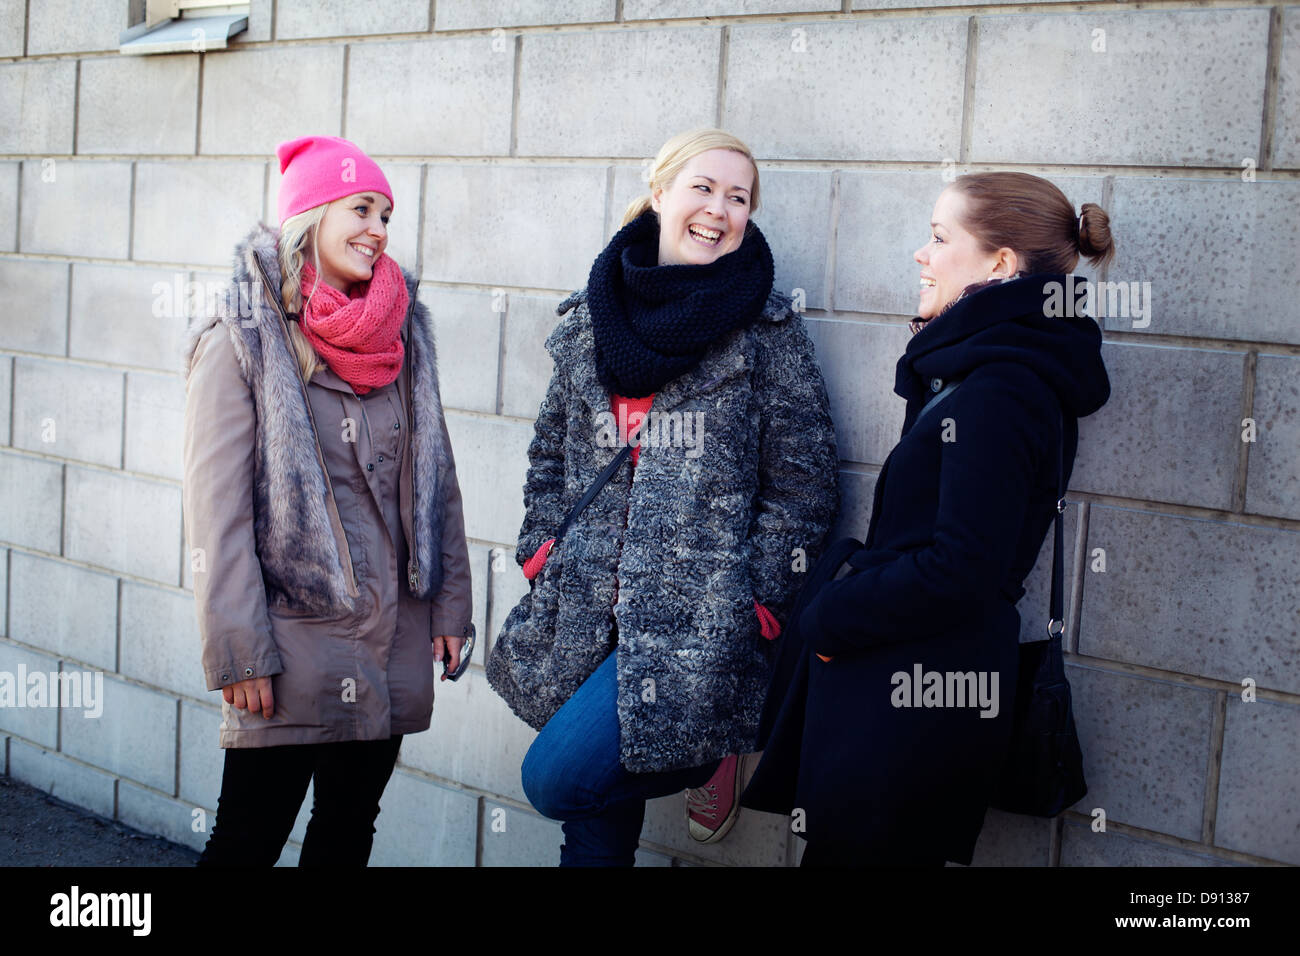 Drei junge Frauen, die gemeinsam lachen Stockfoto